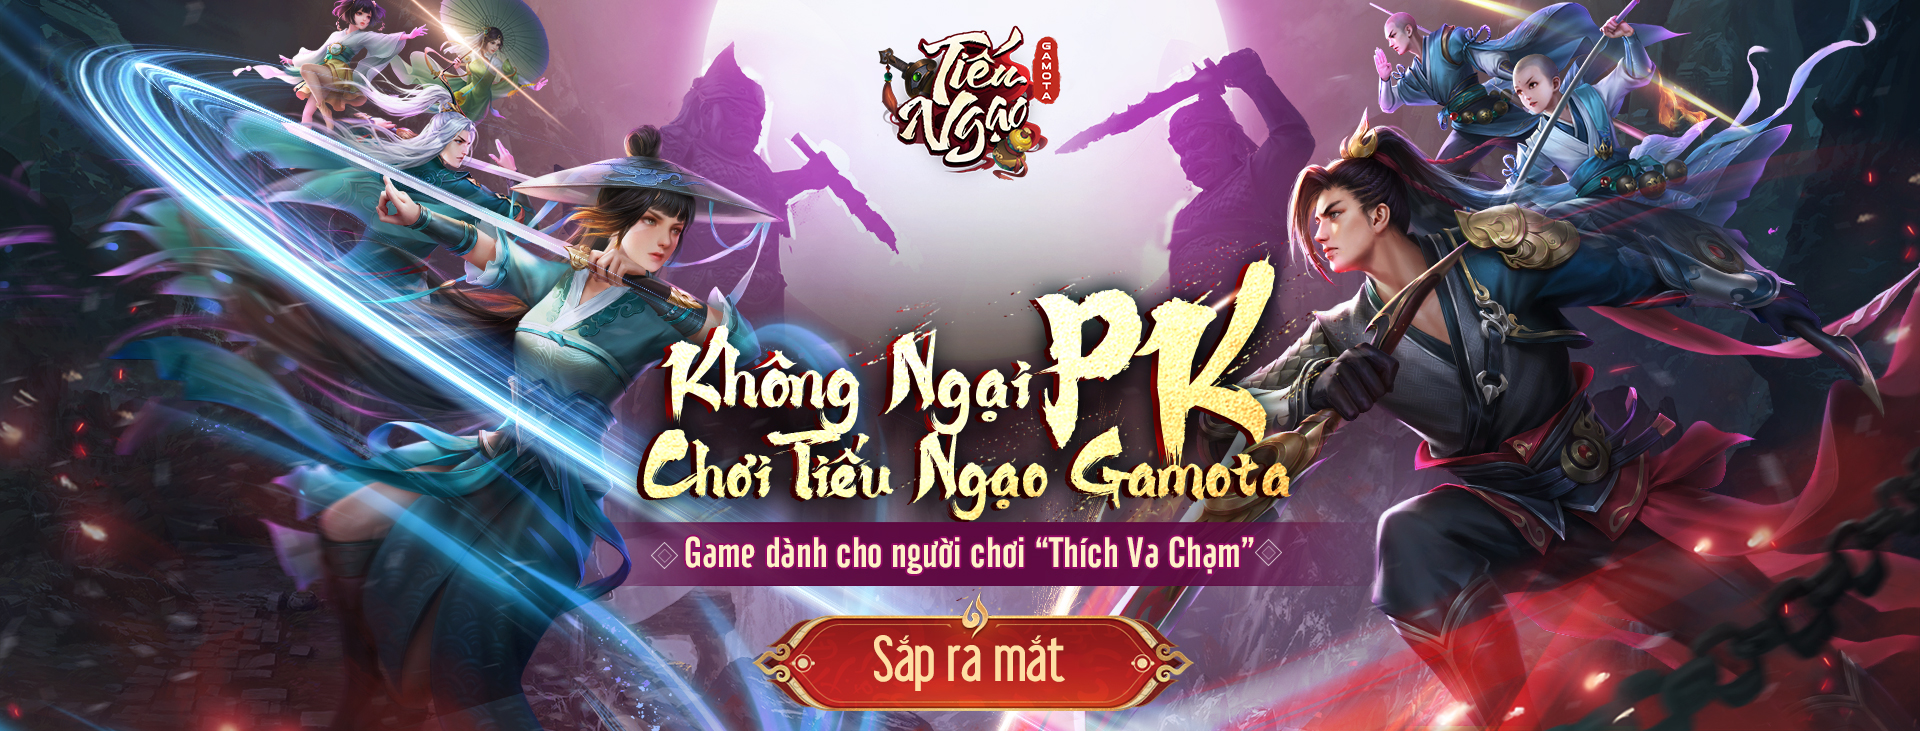 Một siêu phẩm kiếm hiệp Kim Dung sắp “tái ngộ” game thủ Việt, được phát triển bởi Perfect World